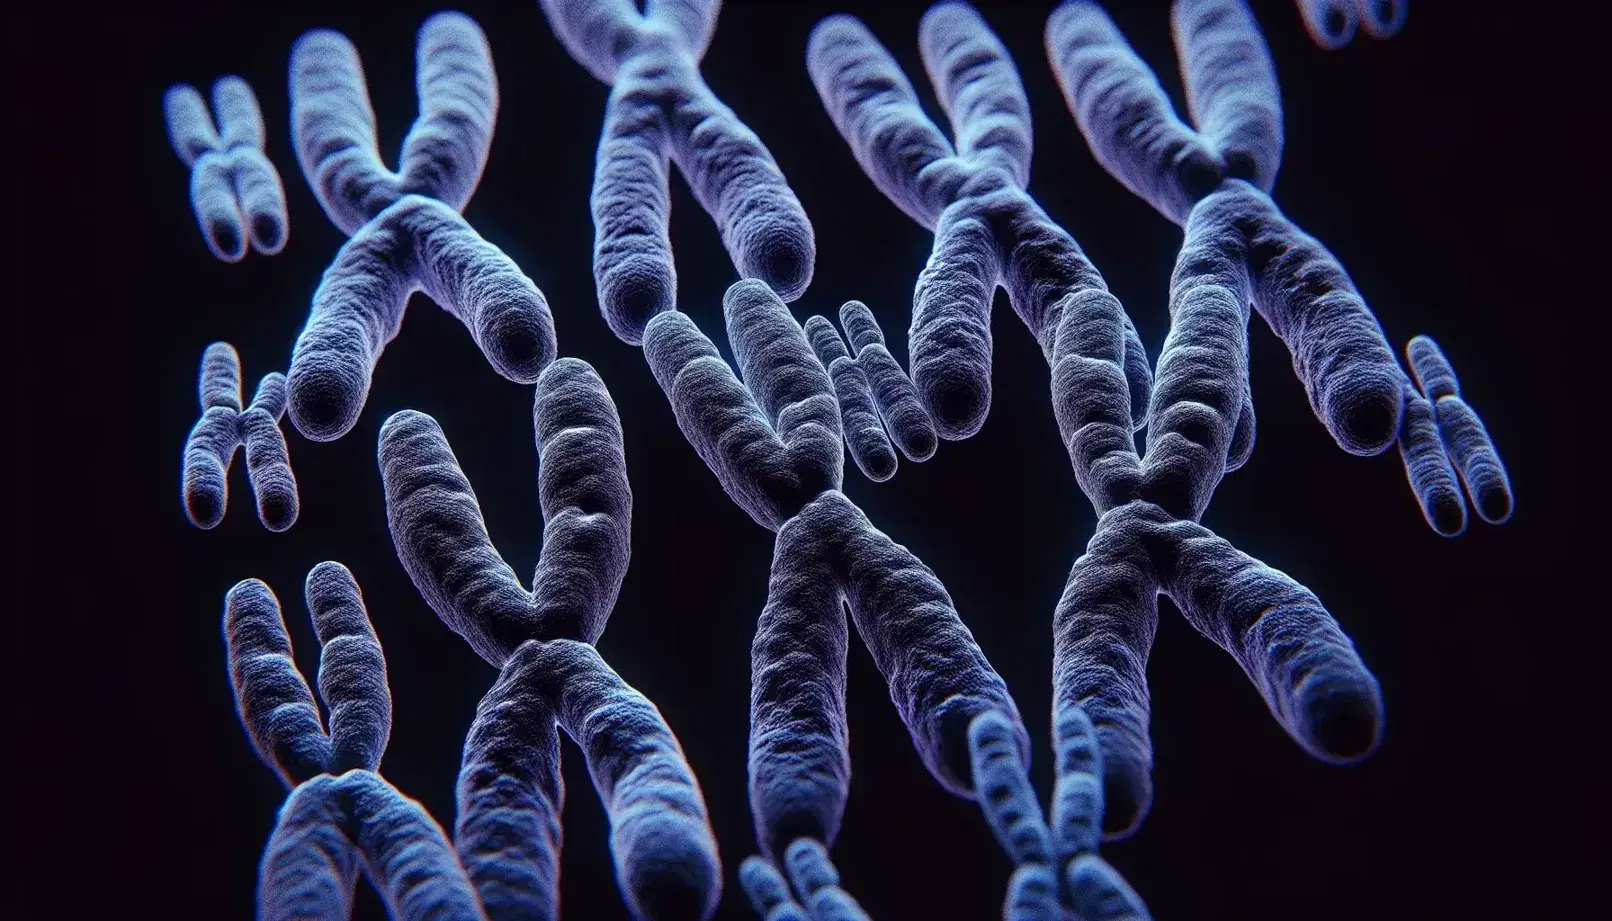 Cromosomas humanos en metafase de mitosis con centromeros visibles y brazos extendidos, teñidos en tonos azules y morados sobre fondo negro.